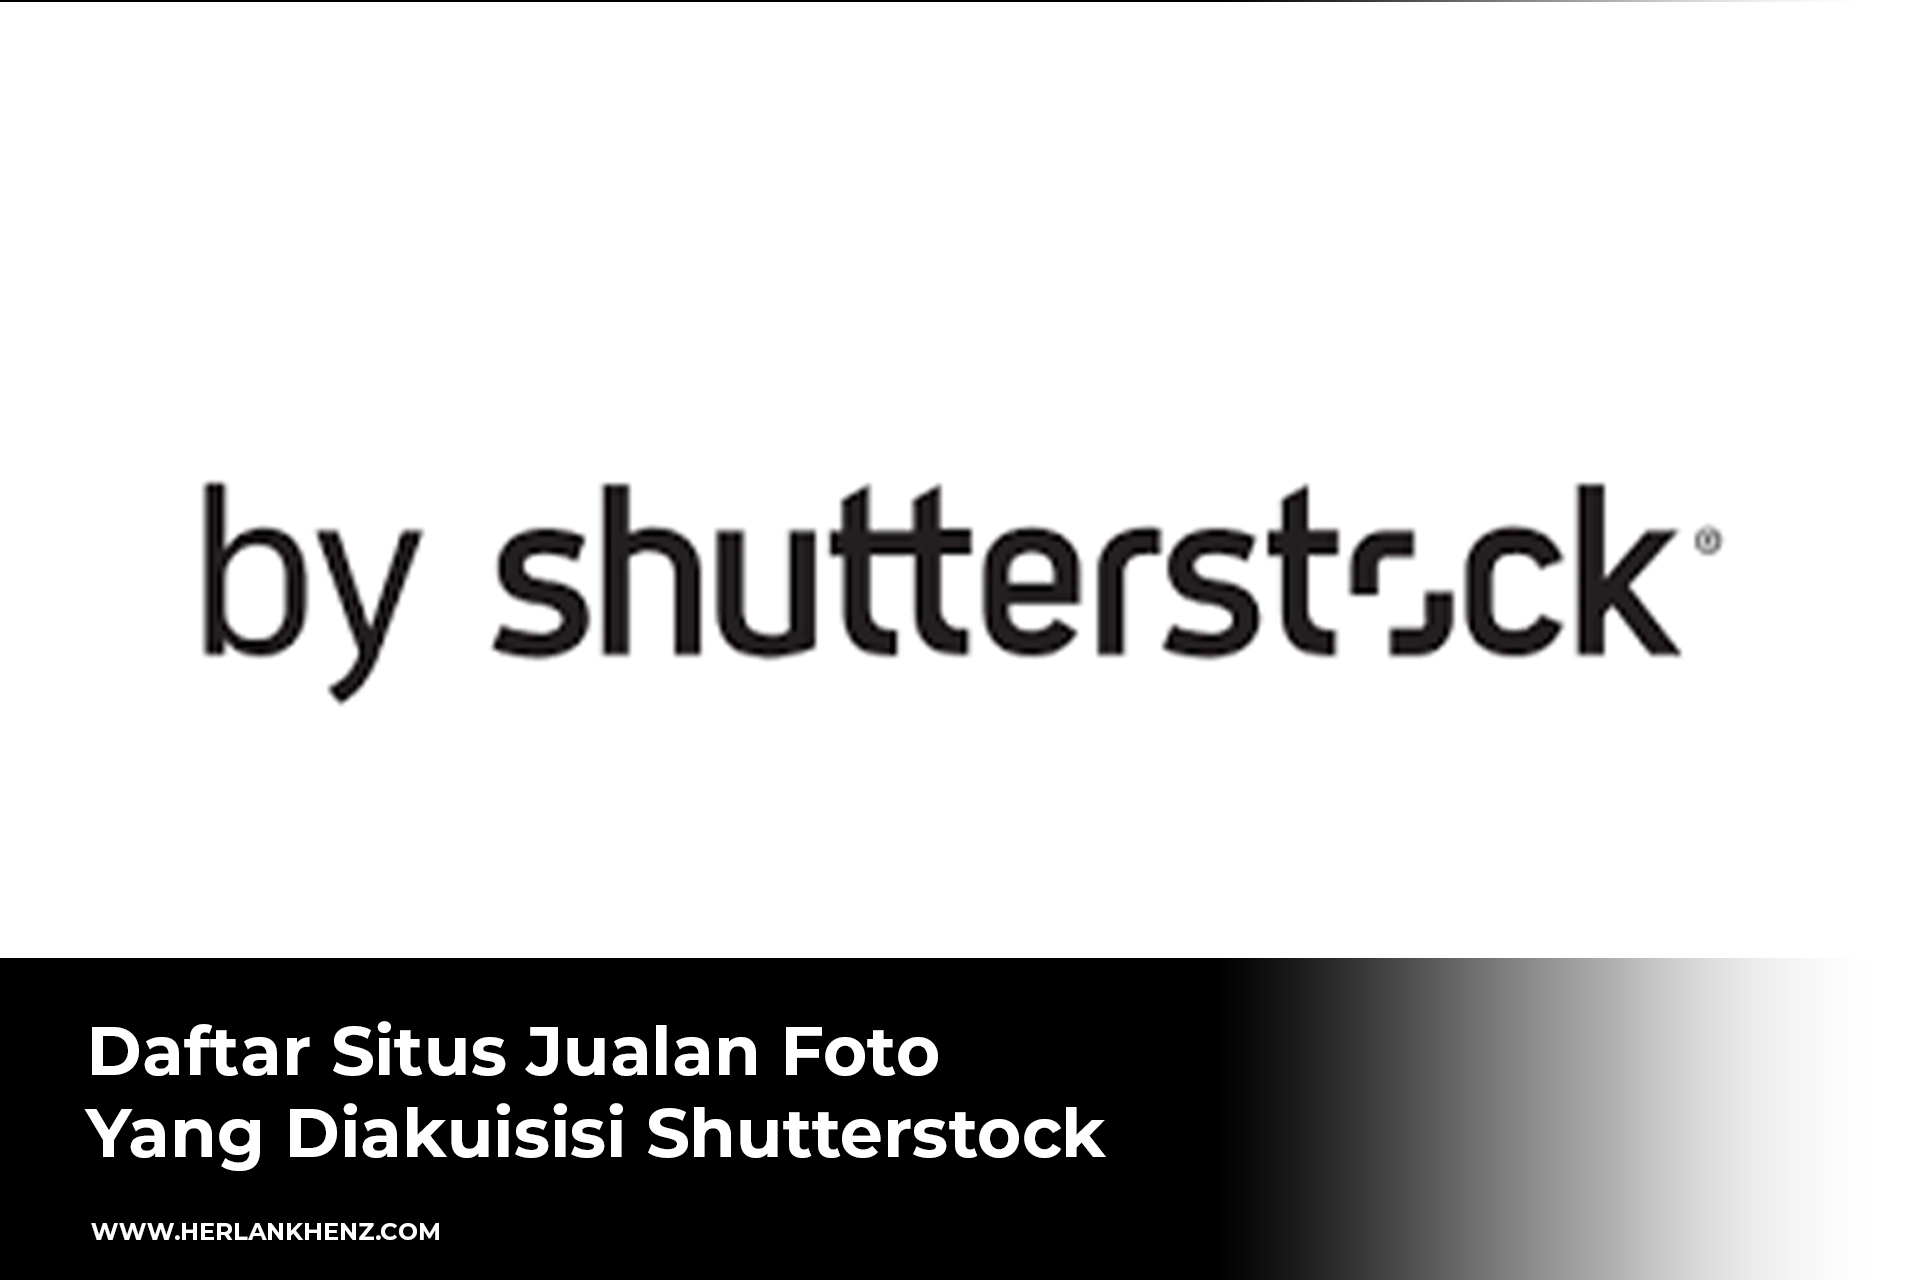 Liste der von Shutterstock erworbenen Fotoverkaufsseiten